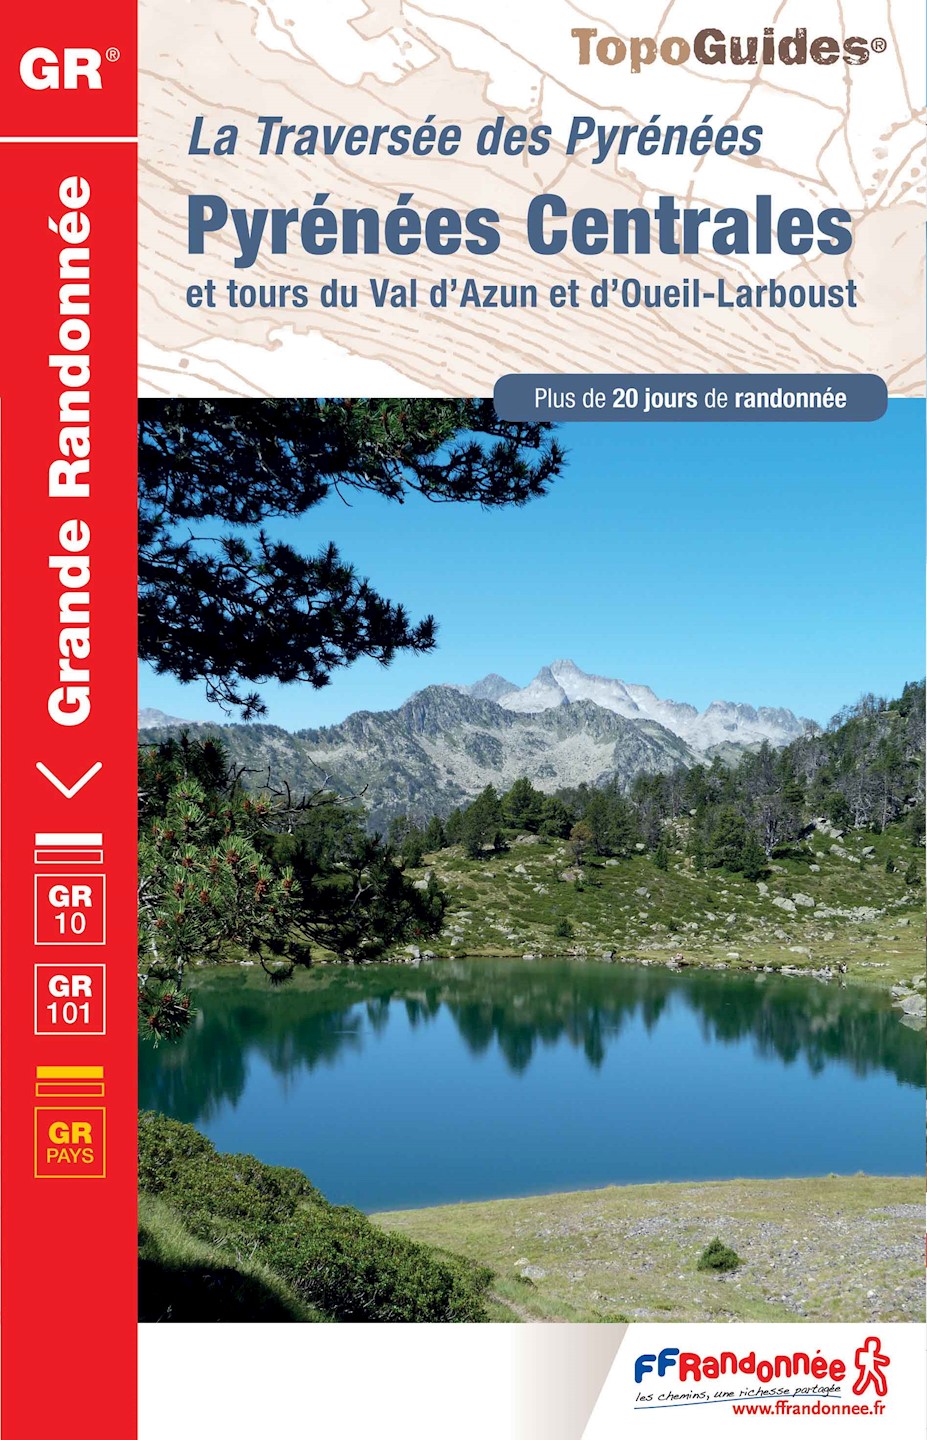 Topoguide® GR® 10 - la traversée des Pyrénées Centrales 